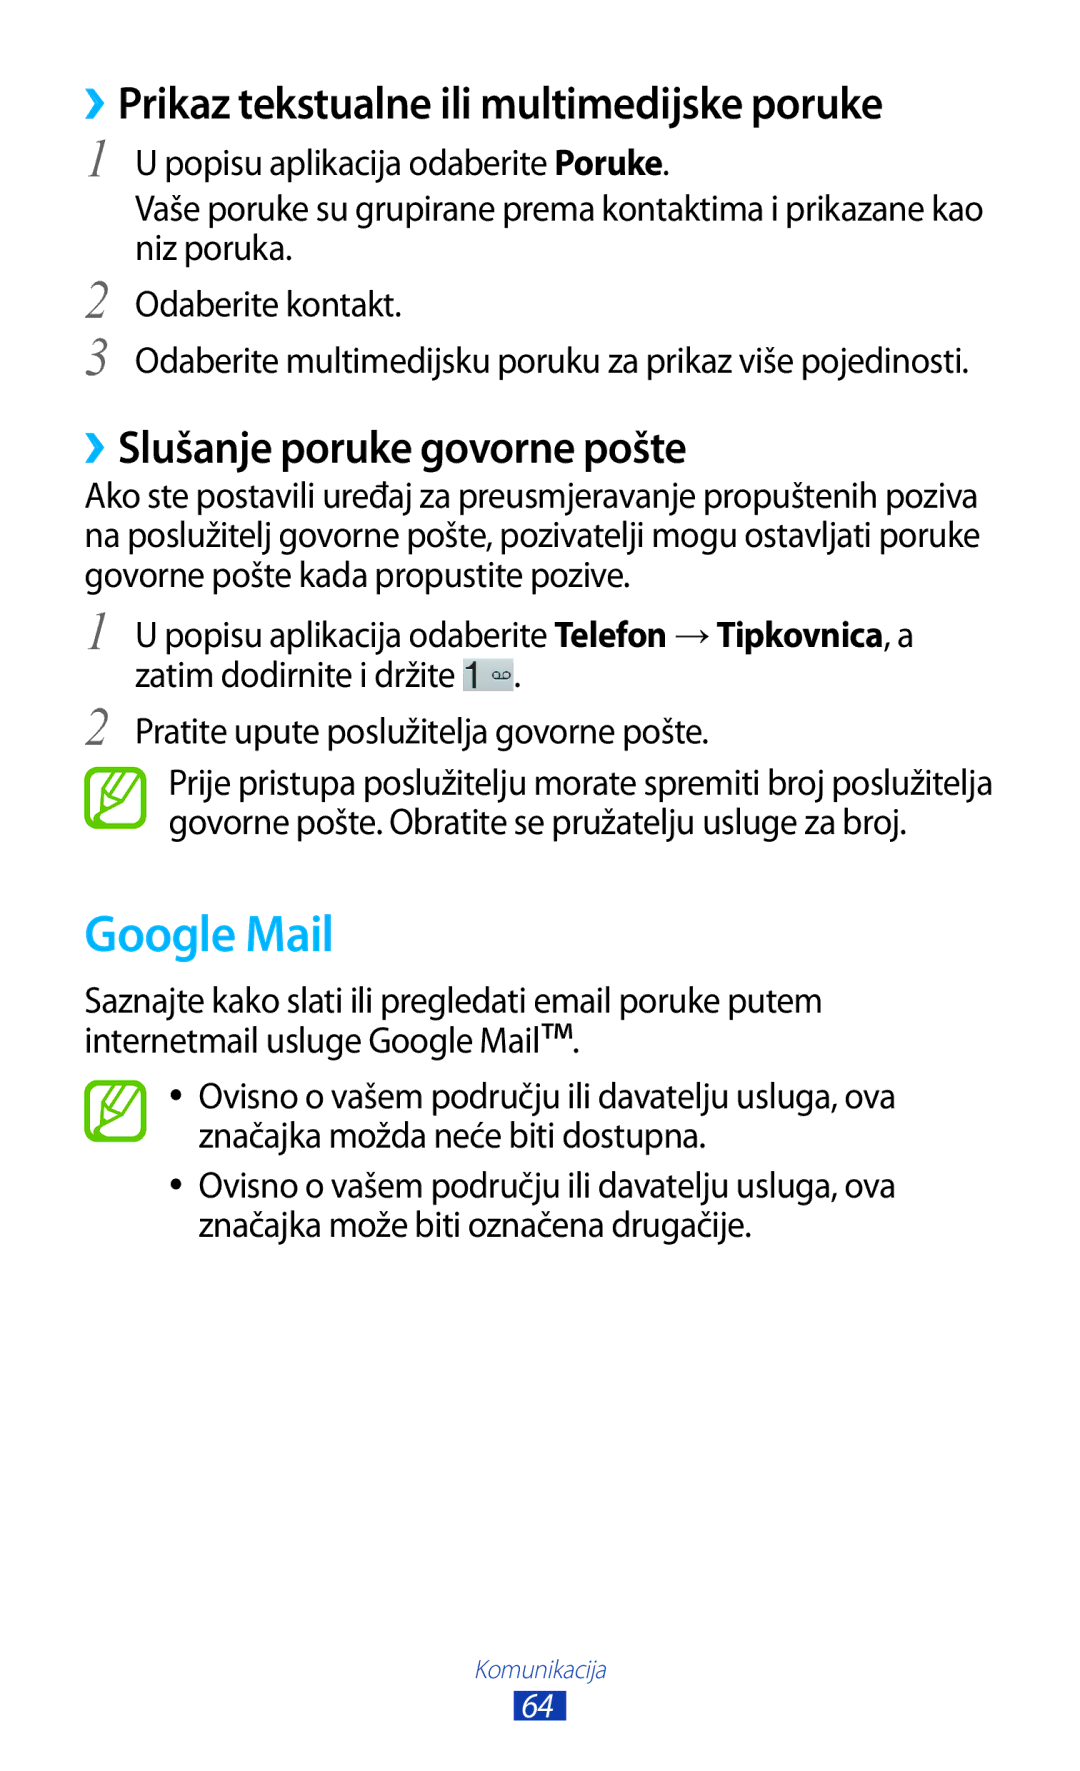 Samsung GT-P3100ZWATRA manual Google Mail, ››Prikaz tekstualne ili multimedijske poruke, ››Slušanje poruke govorne pošte 